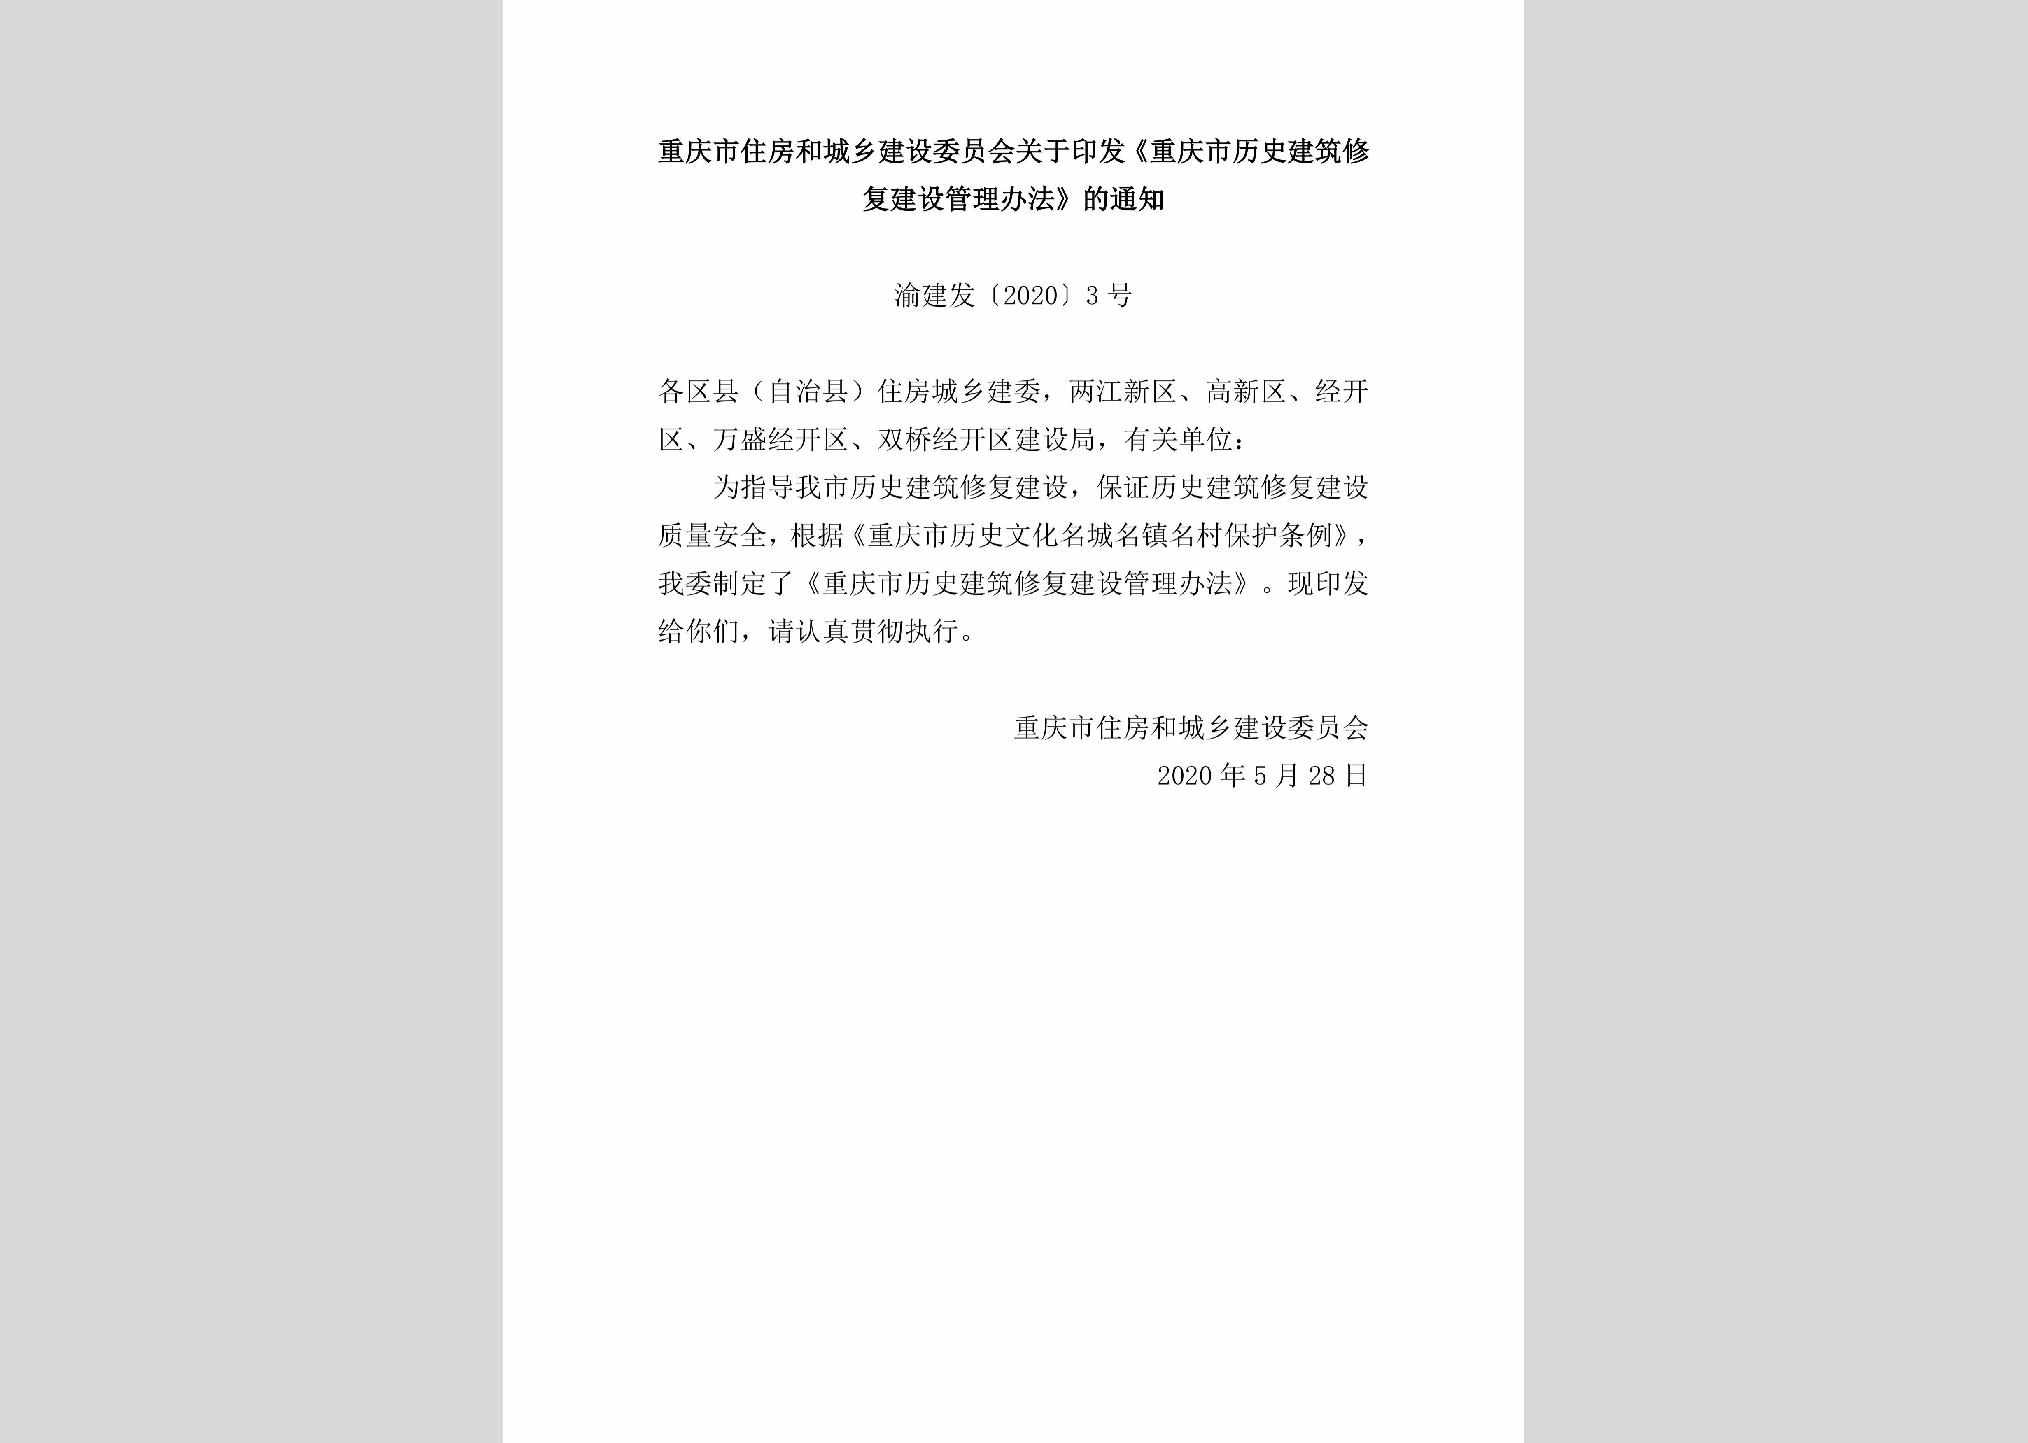 渝建发[2020]3号：重庆市住房和城乡建设委员会关于印发《重庆市历史建筑修复建设管理办法》的通知